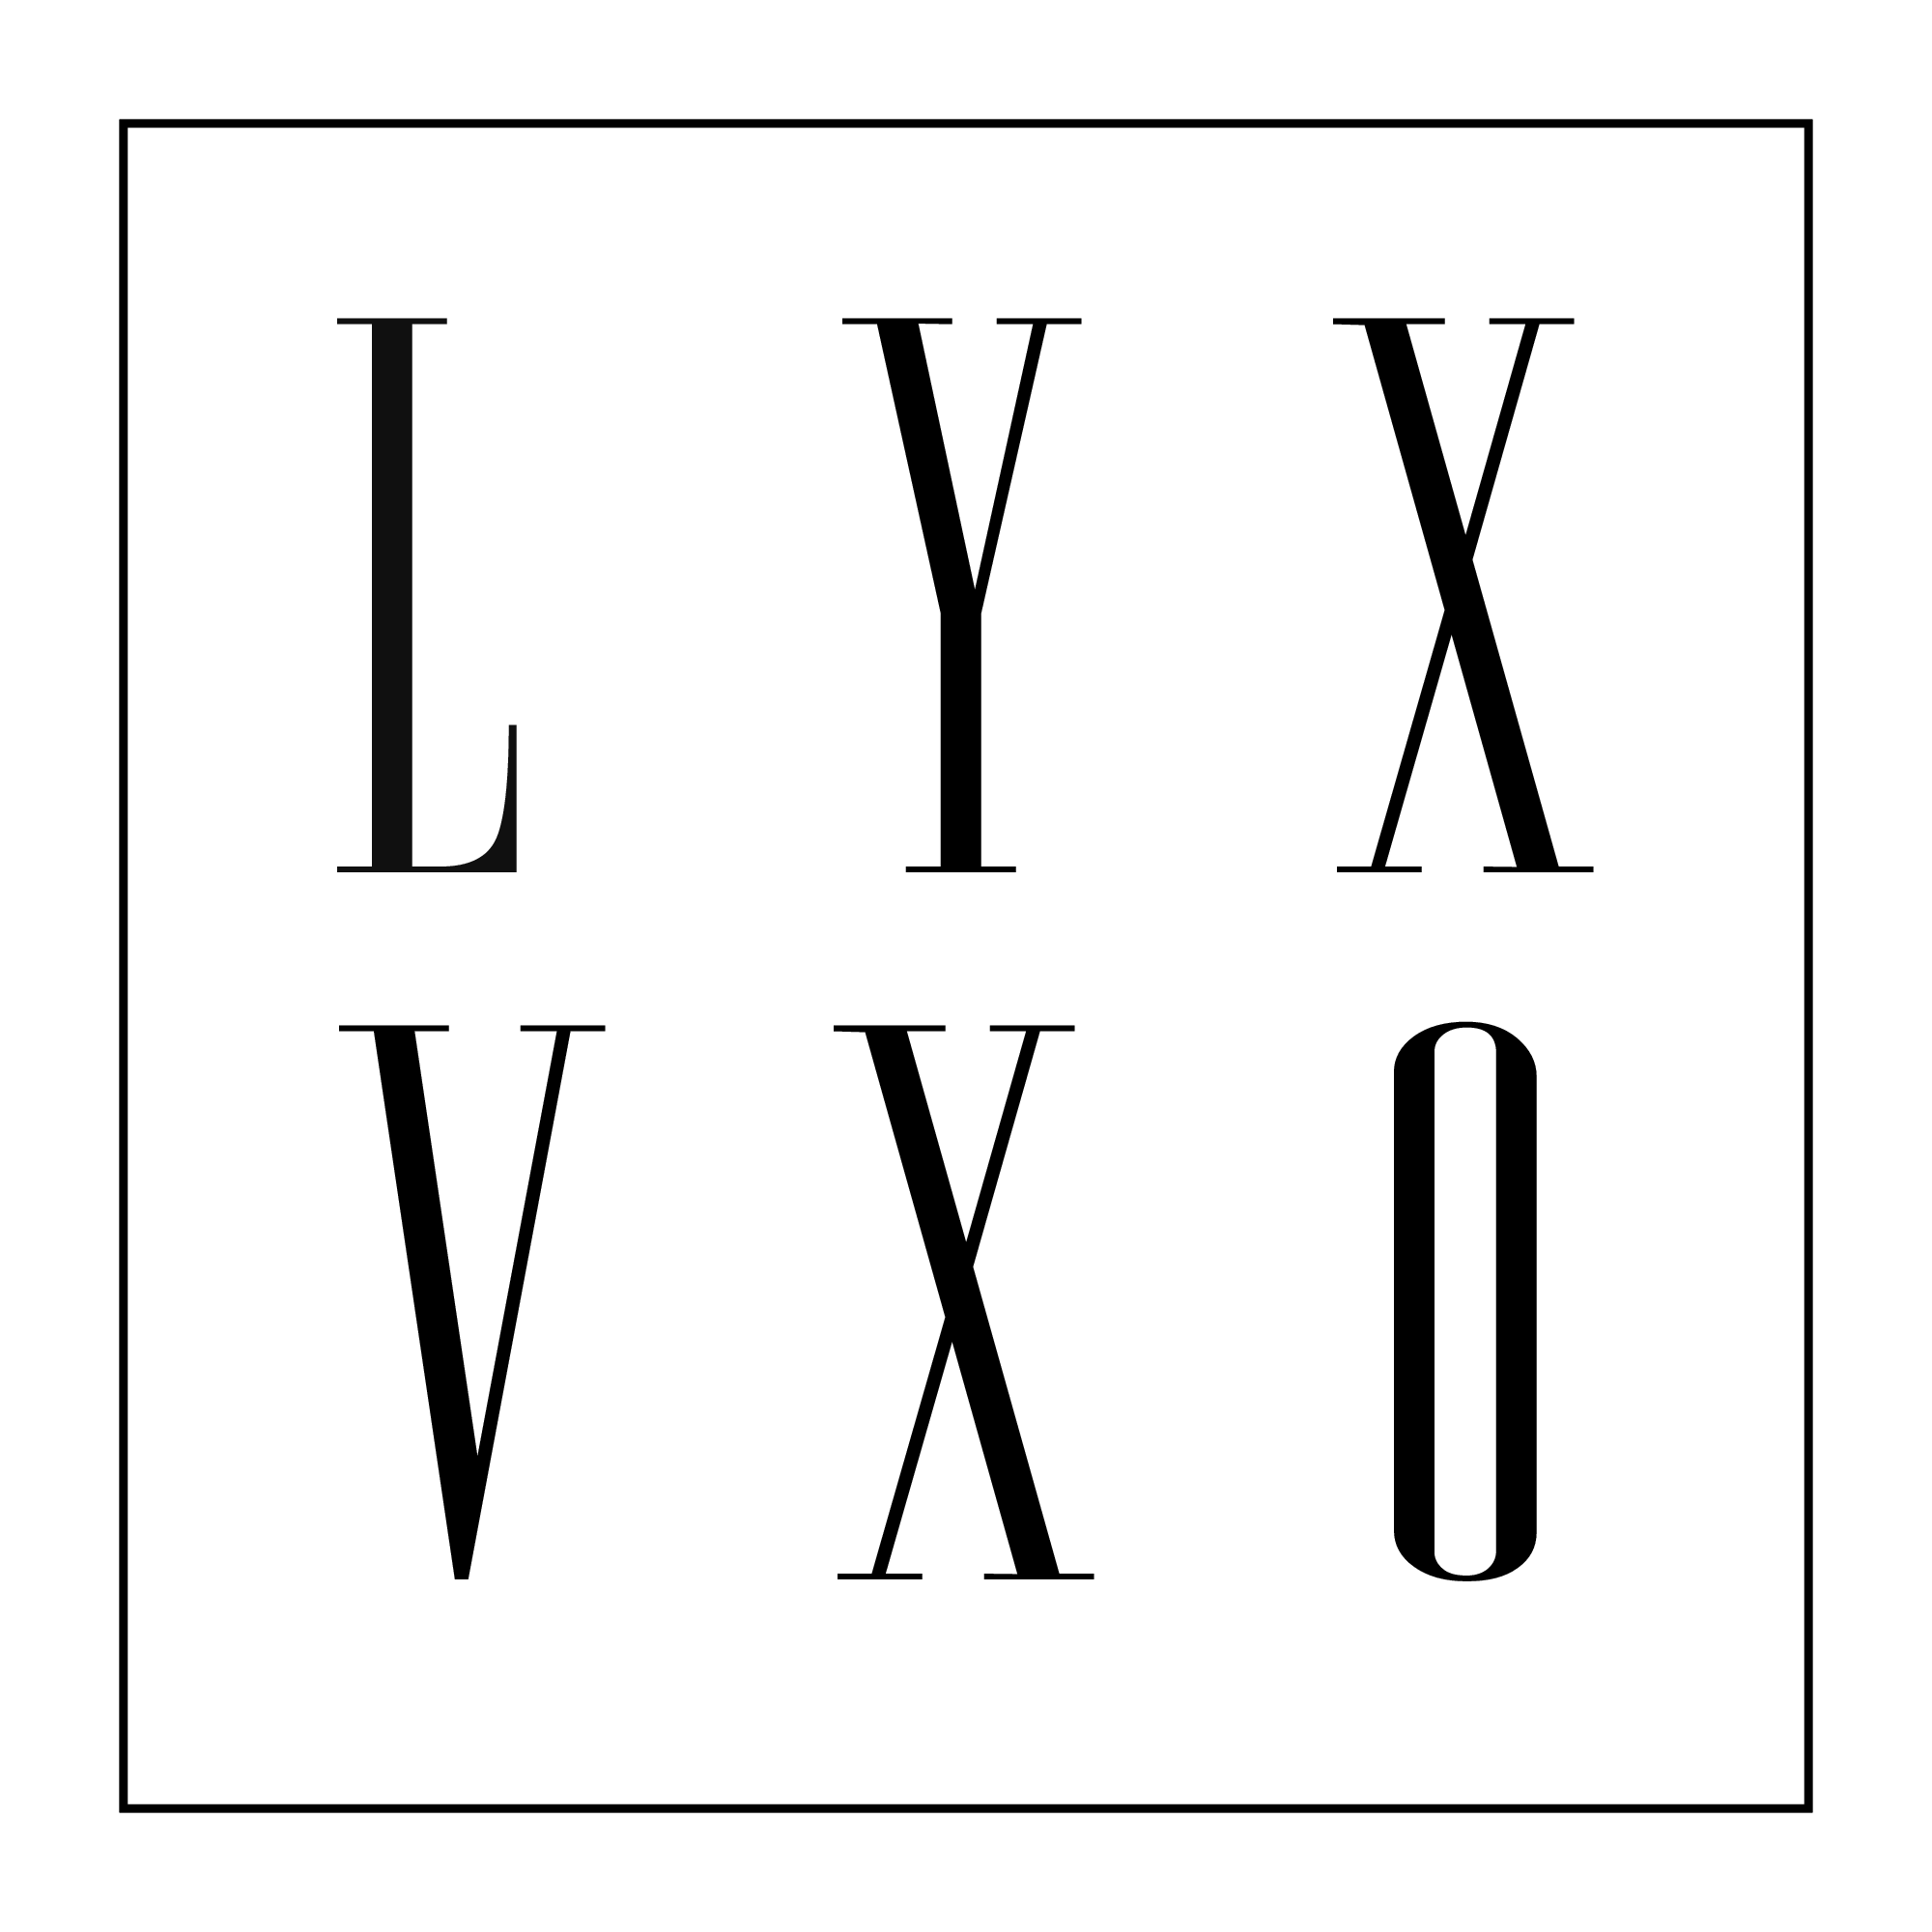 LYX VXO